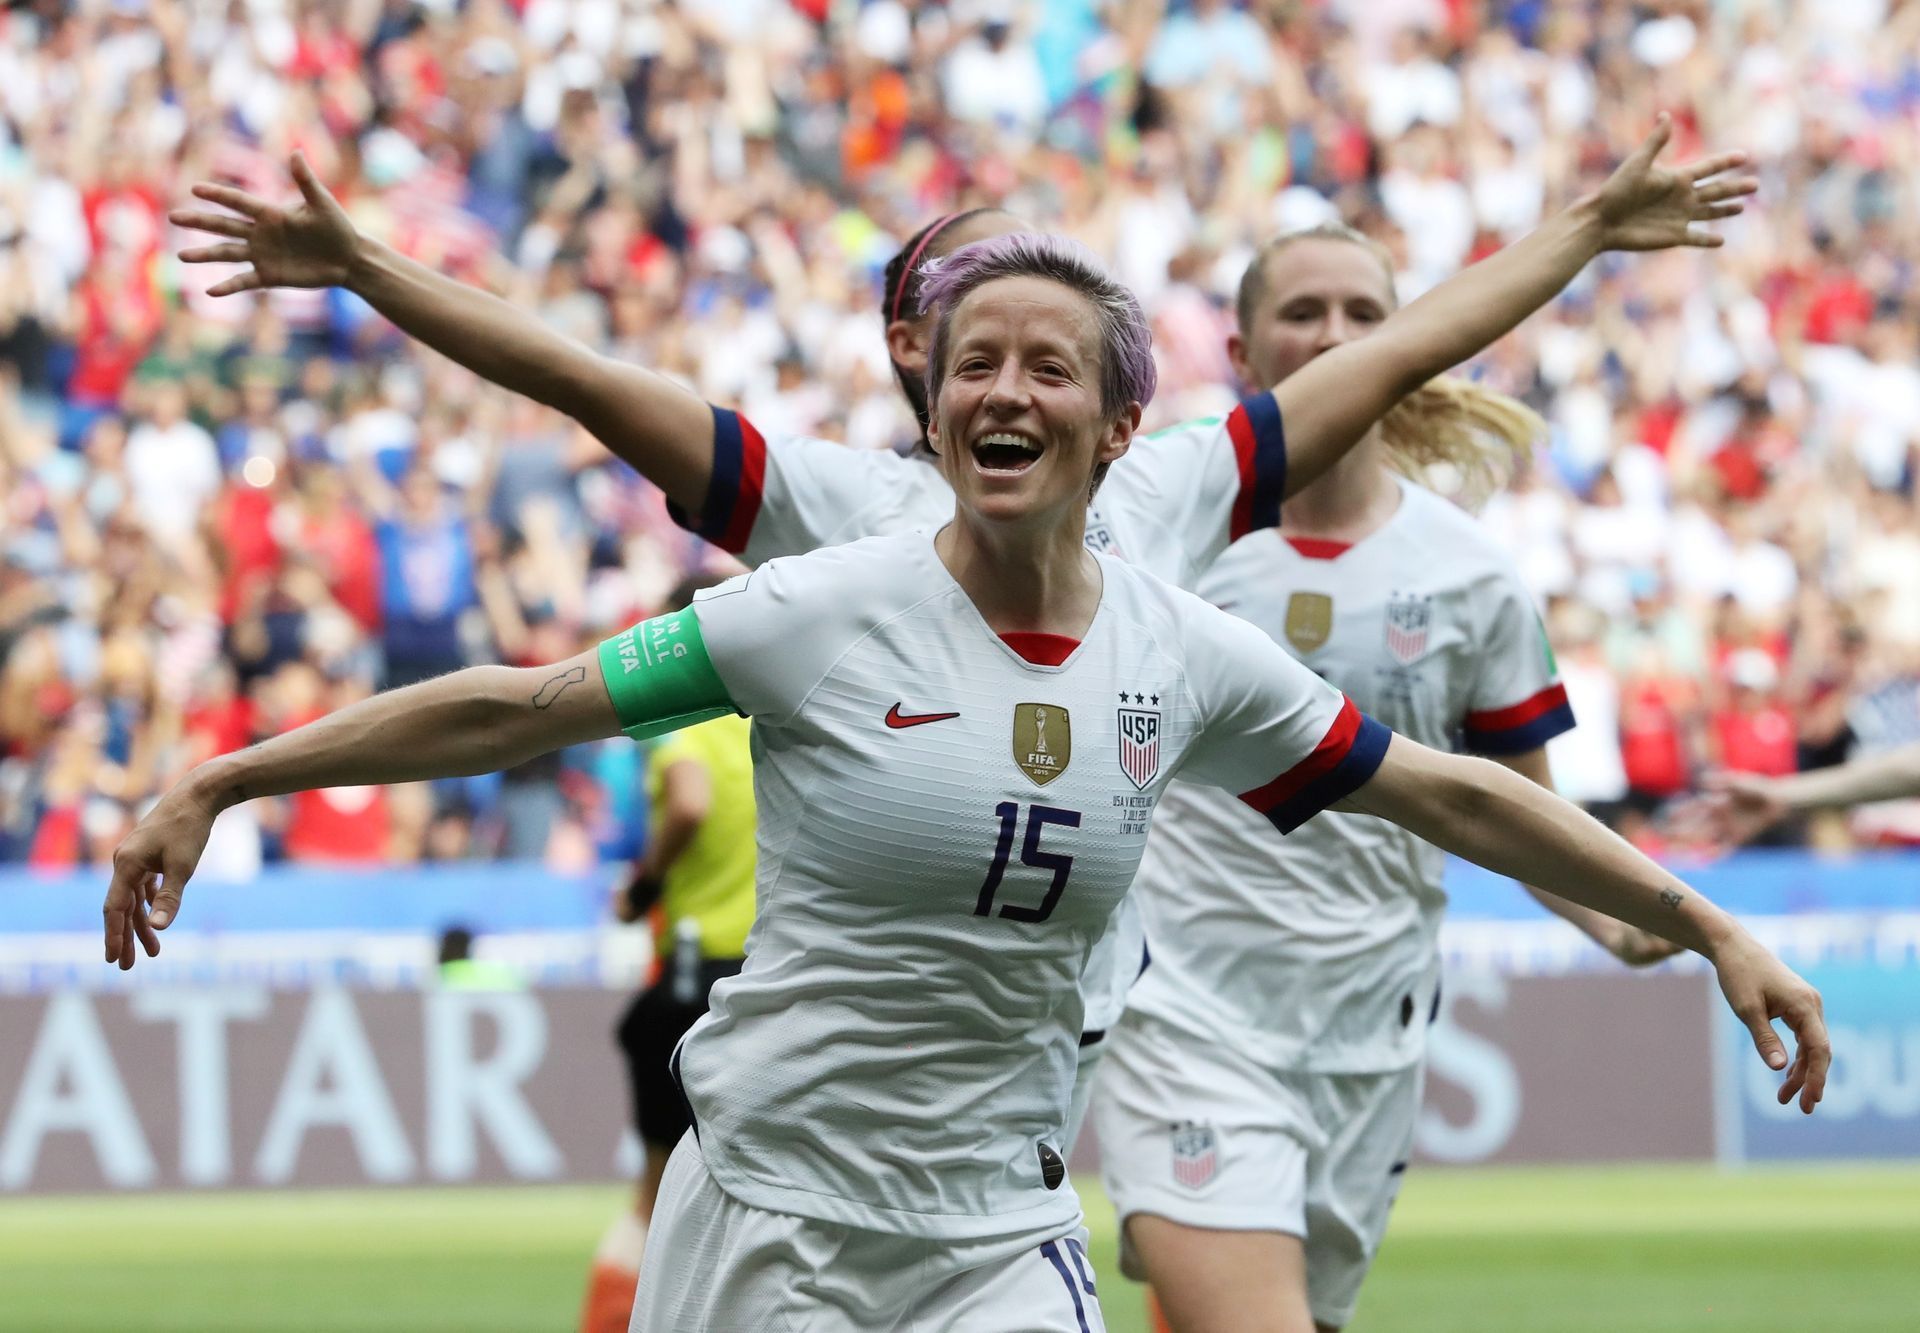 Finále ženského MS ve fotbalu 2019, USA - Nizozemsko: Megan Rapinoeová oslavuje gól USA.